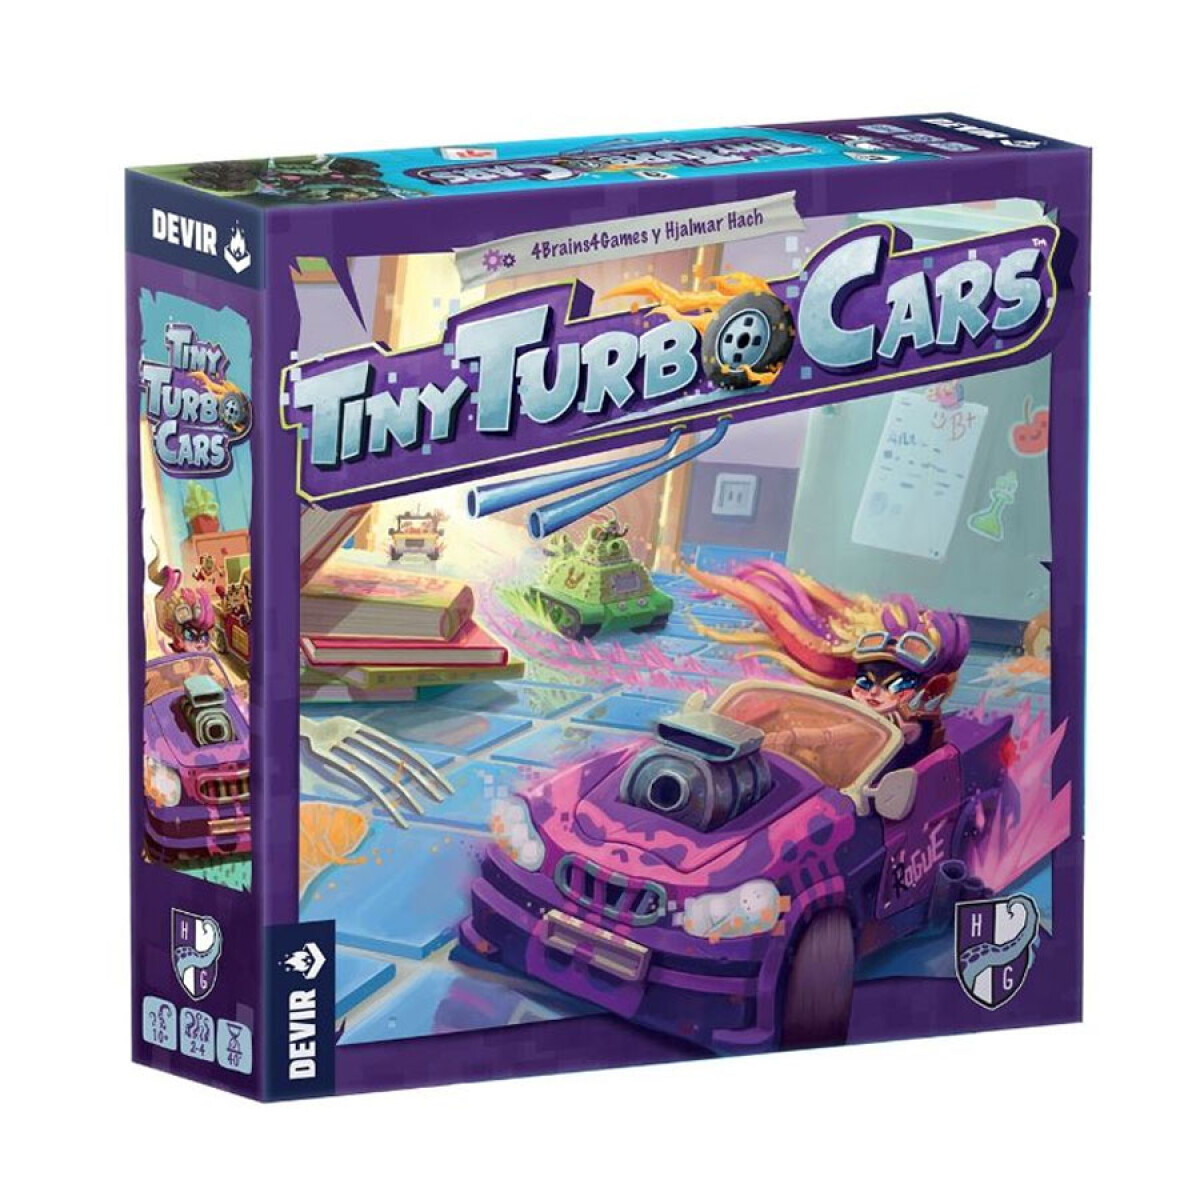 Tiny Turbo Cars 